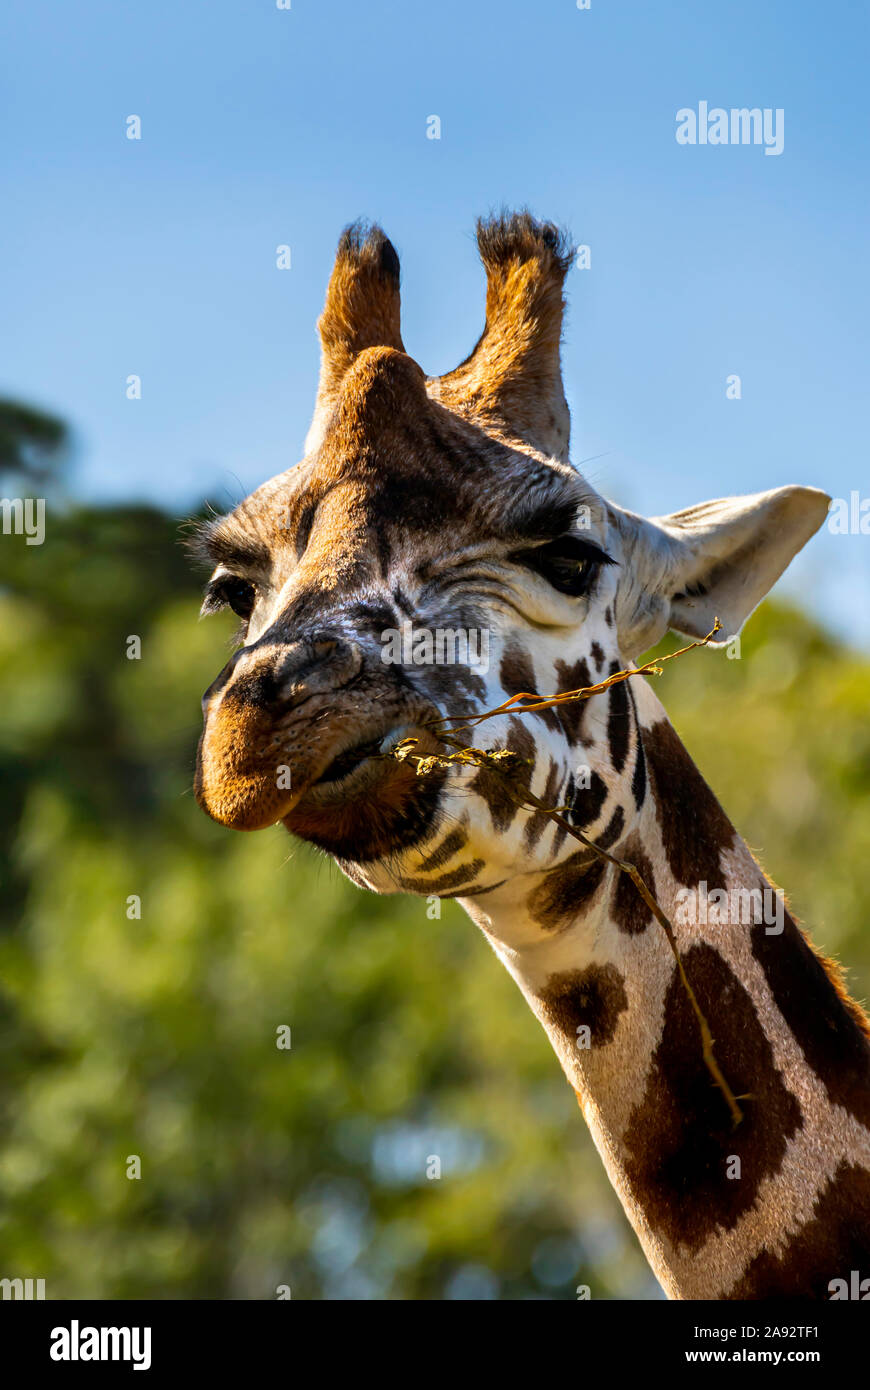 Northern Giraffe Stock Photo